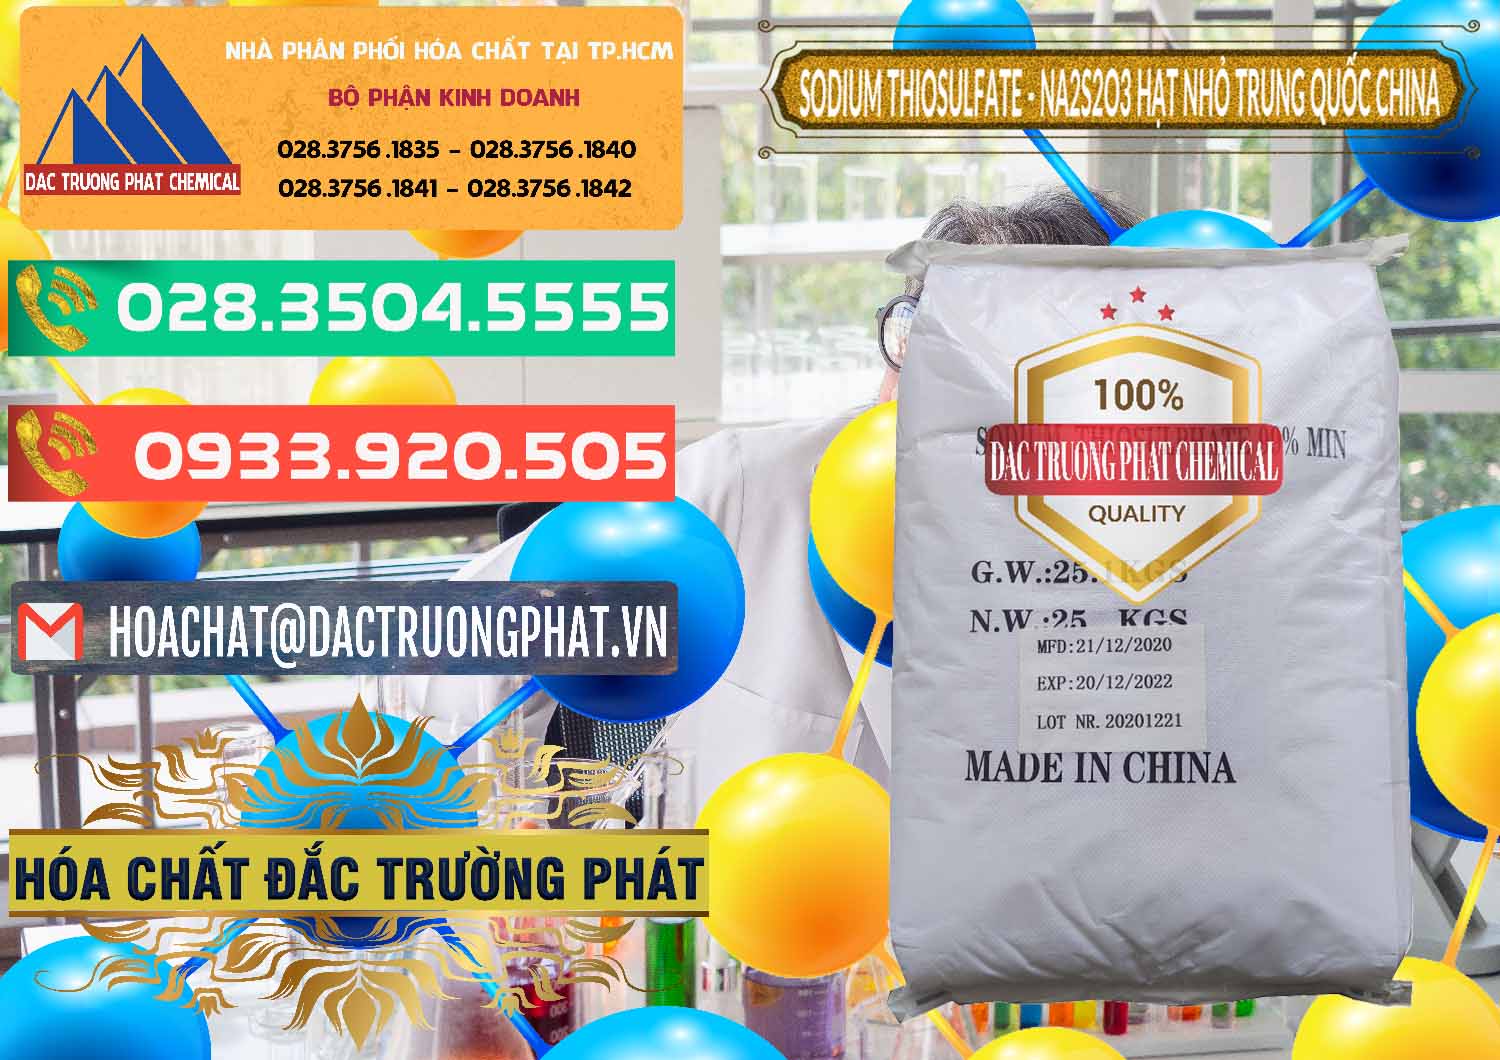 Cung cấp ( bán ) Sodium Thiosulfate - NA2S2O3 Hạt Nhỏ Trung Quốc China - 0204 - Nhà cung cấp _ bán hóa chất tại TP.HCM - congtyhoachat.com.vn